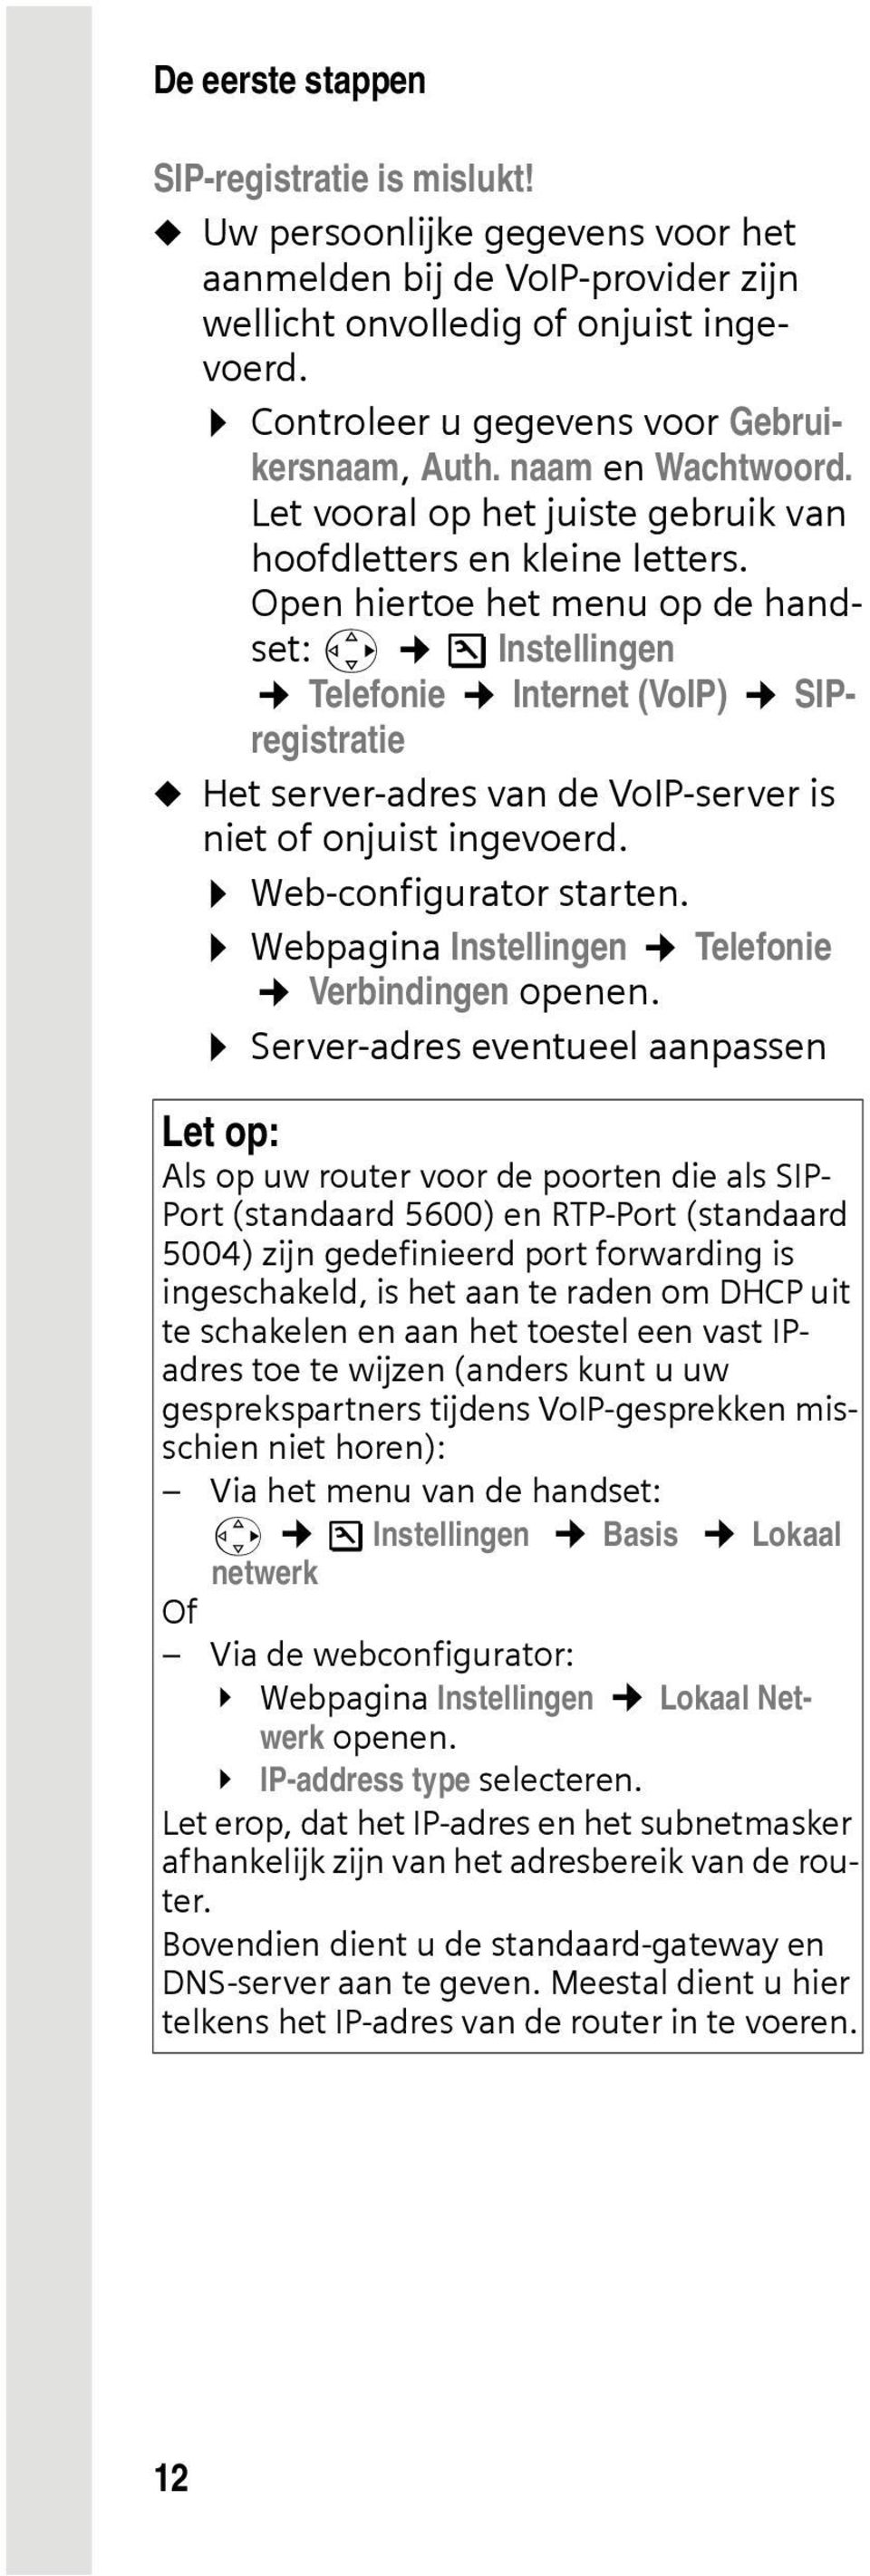 Open hiertoe het menu op de handset: v Ð Instellingen Telefonie Internet (VoIP) SIPregistratie u Het server-adres van de VoIP-server is niet of onjuist ingevoerd. Web-configurator starten.